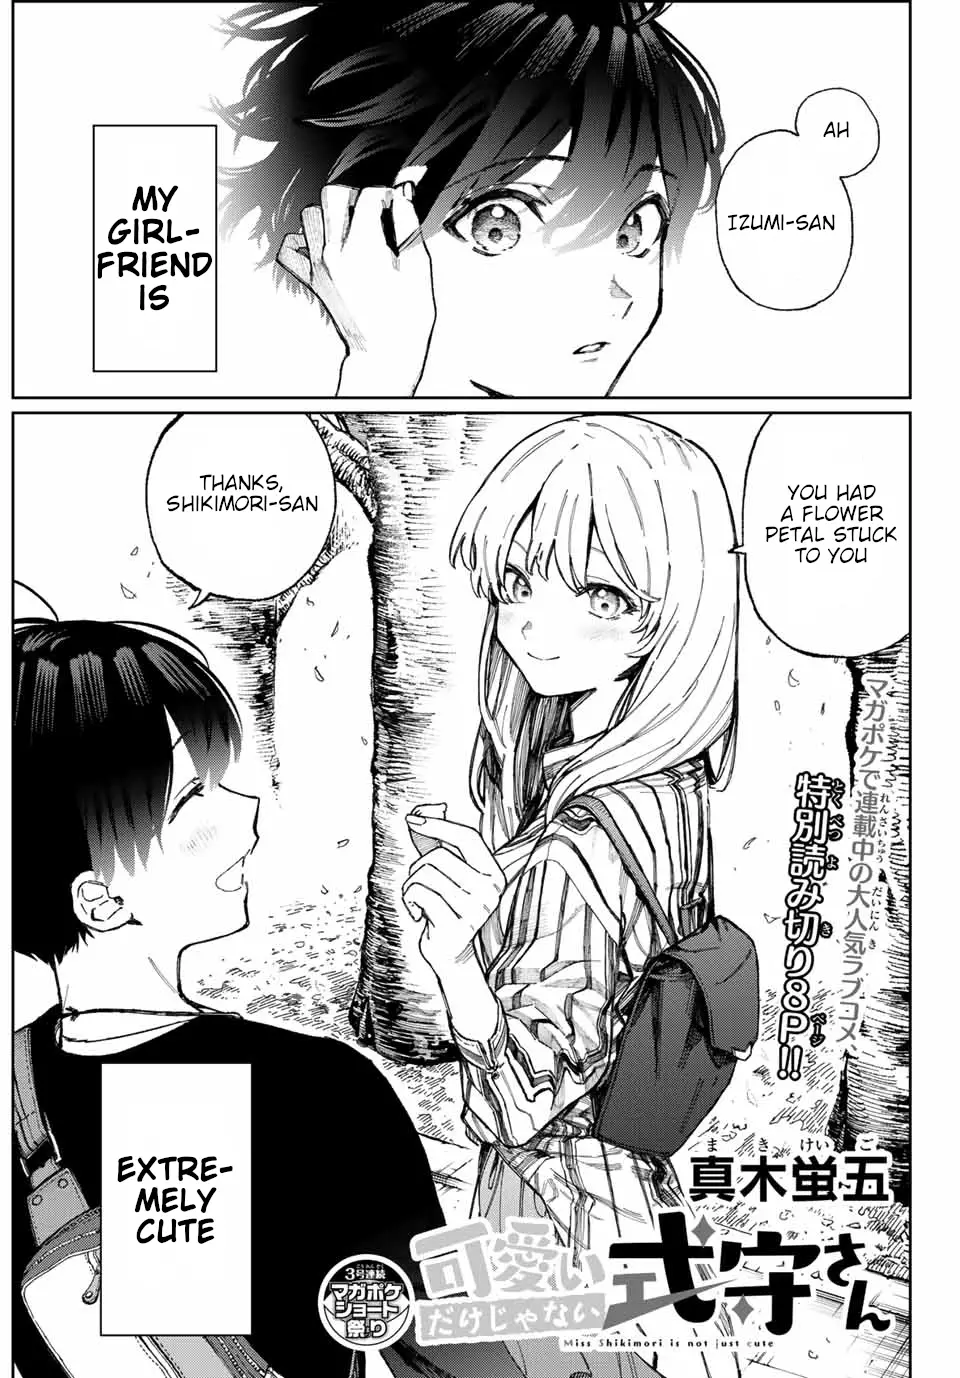 Shikimori's Not Just A Cutie - 14 page 2